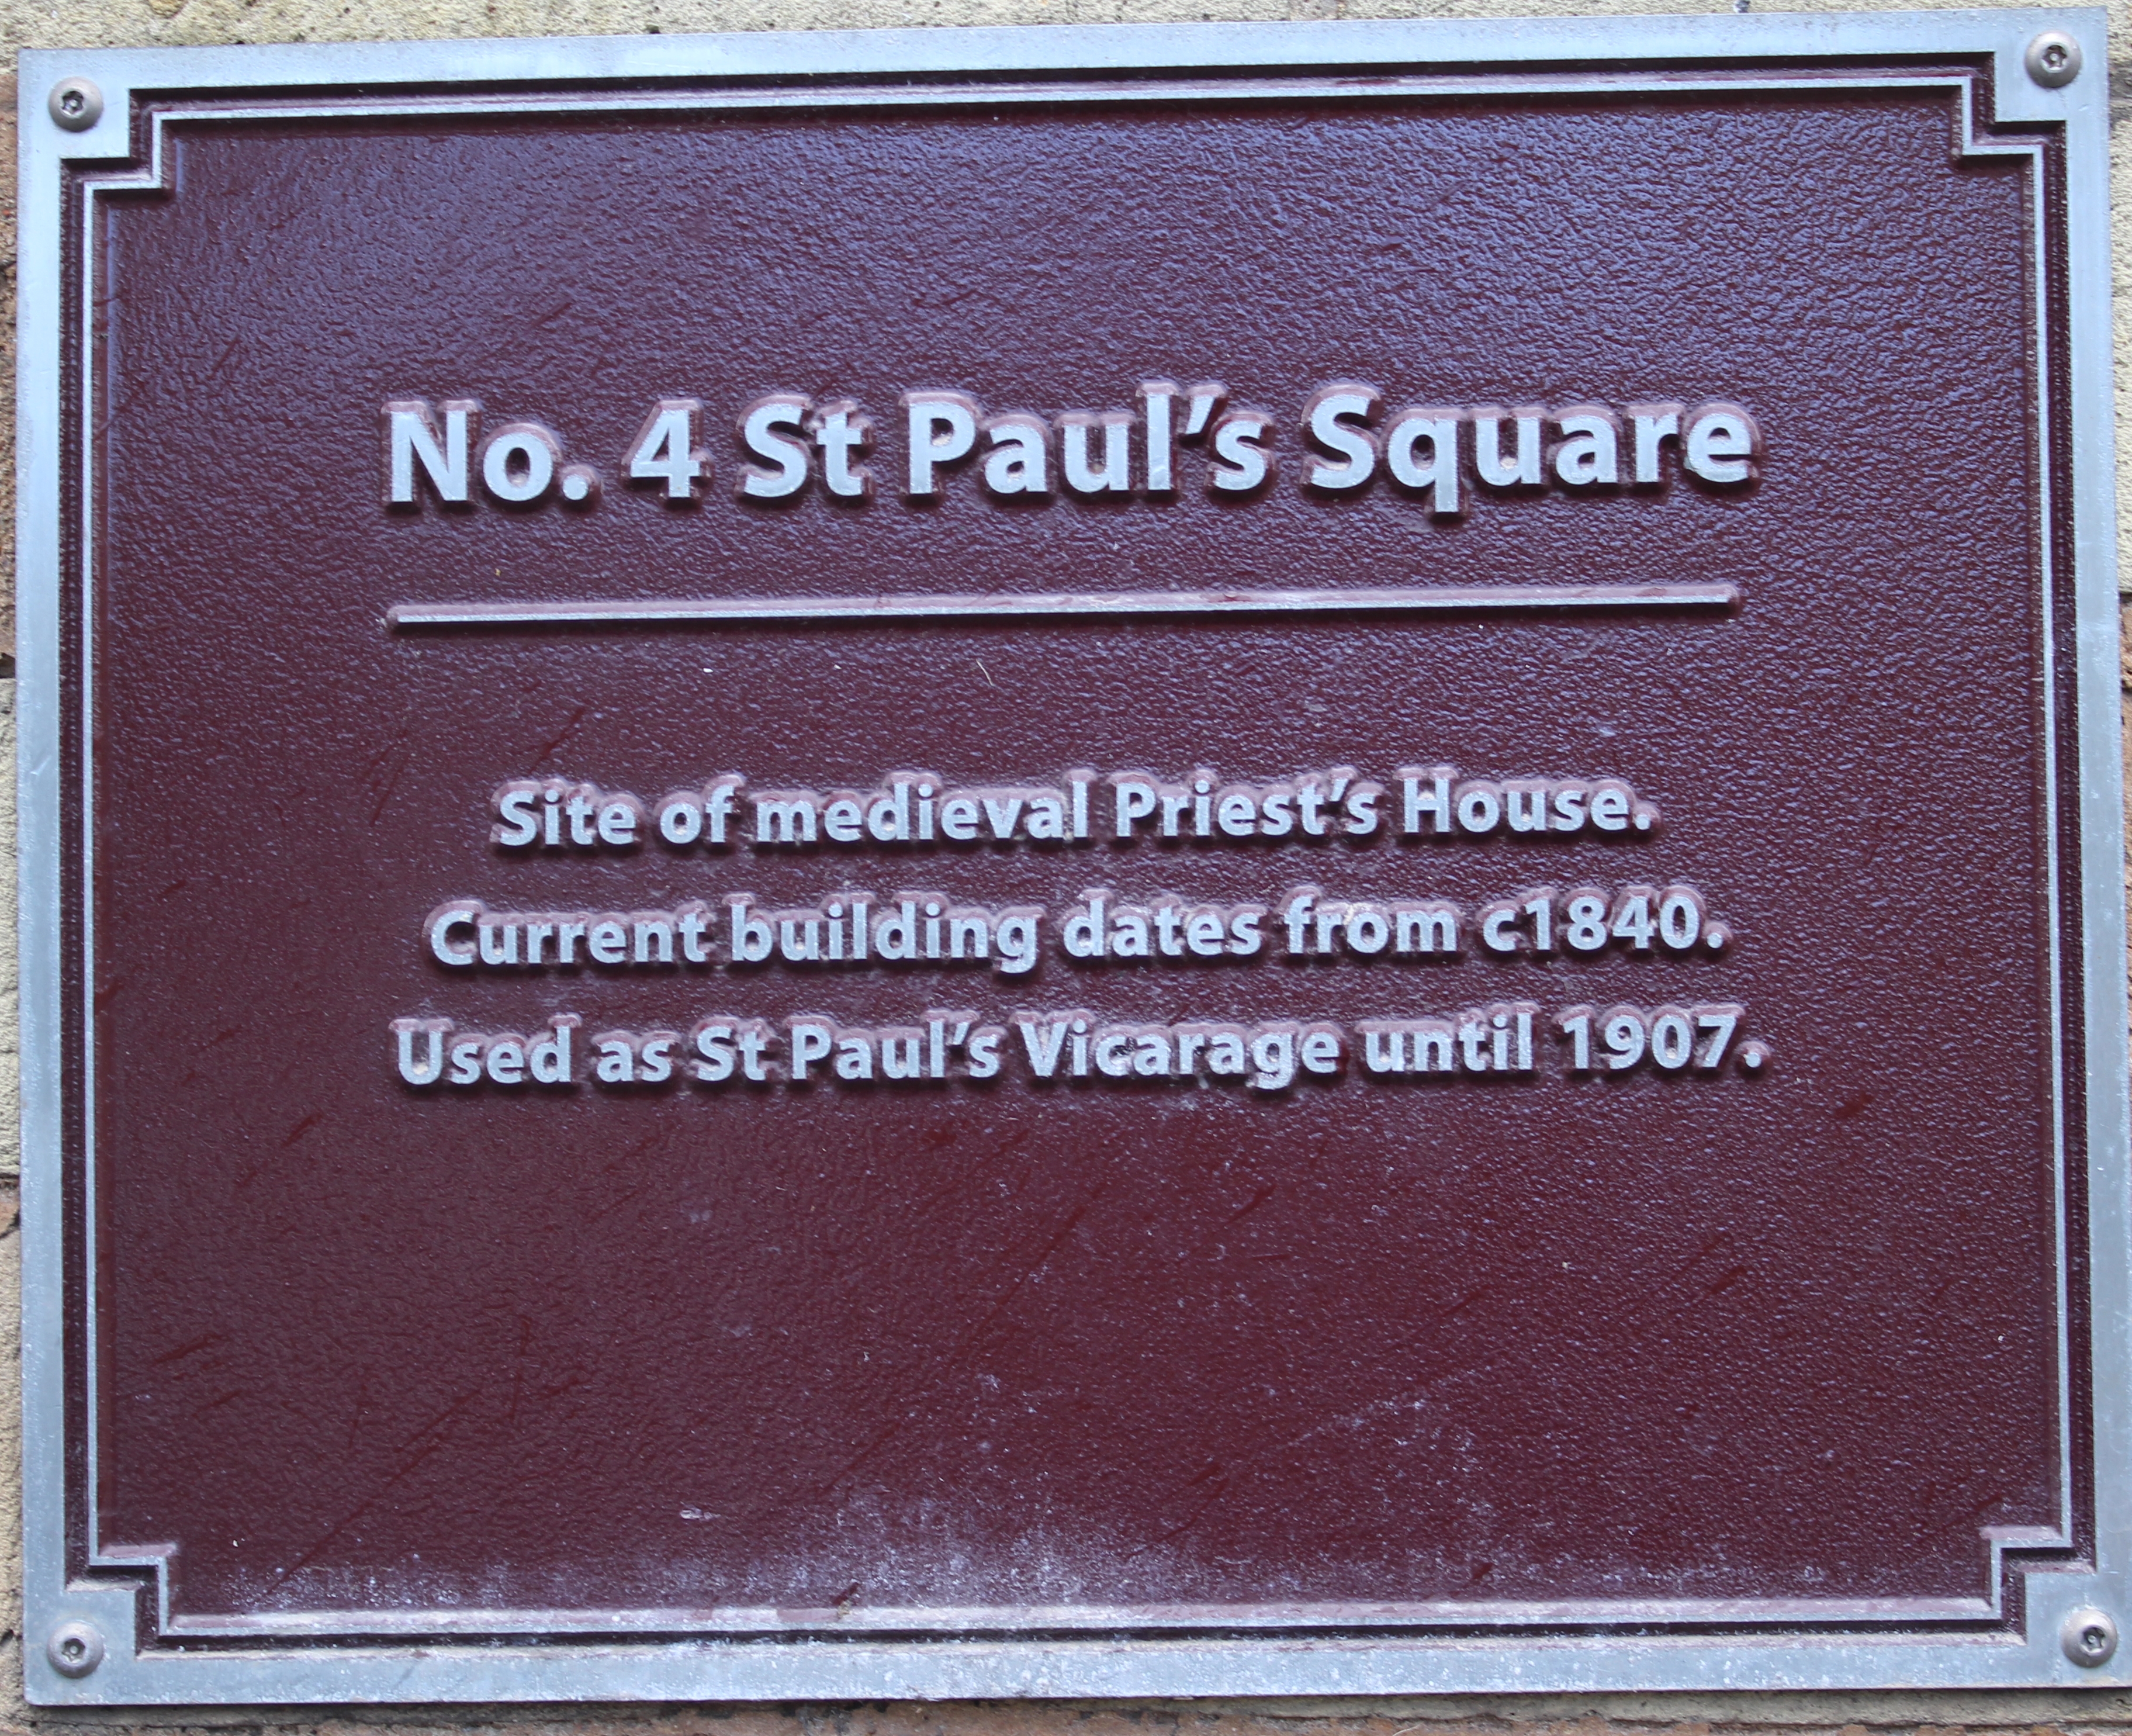 No 4 St Paul's Square commemorative plaque